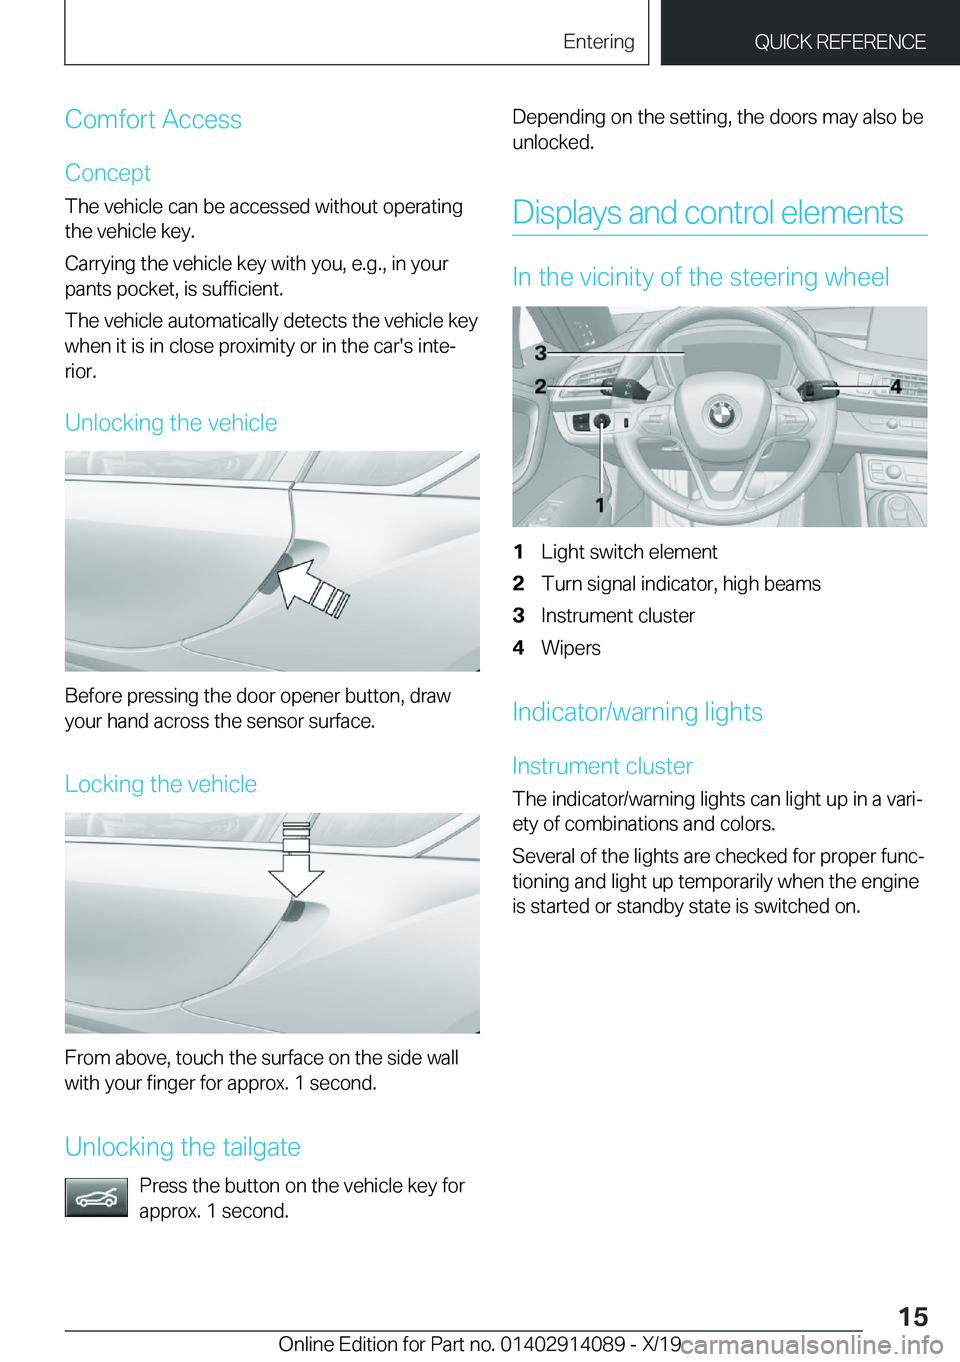 BMW I8 2020 User Guide �C�o�m�f�o�r�t��A�c�c�e�s�s
�C�o�n�c�e�p�t
�T�h�e��v�e�h�i�c�l�e��c�a�n��b�e��a�c�c�e�s�s�e�d��w�i�t�h�o�u�t��o�p�e�r�a�t�i�n�g �t�h�e��v�e�h�i�c�l�e��k�e�y�.
�C�a�r�r�y�i�n�g��t�h�e��v�e�h